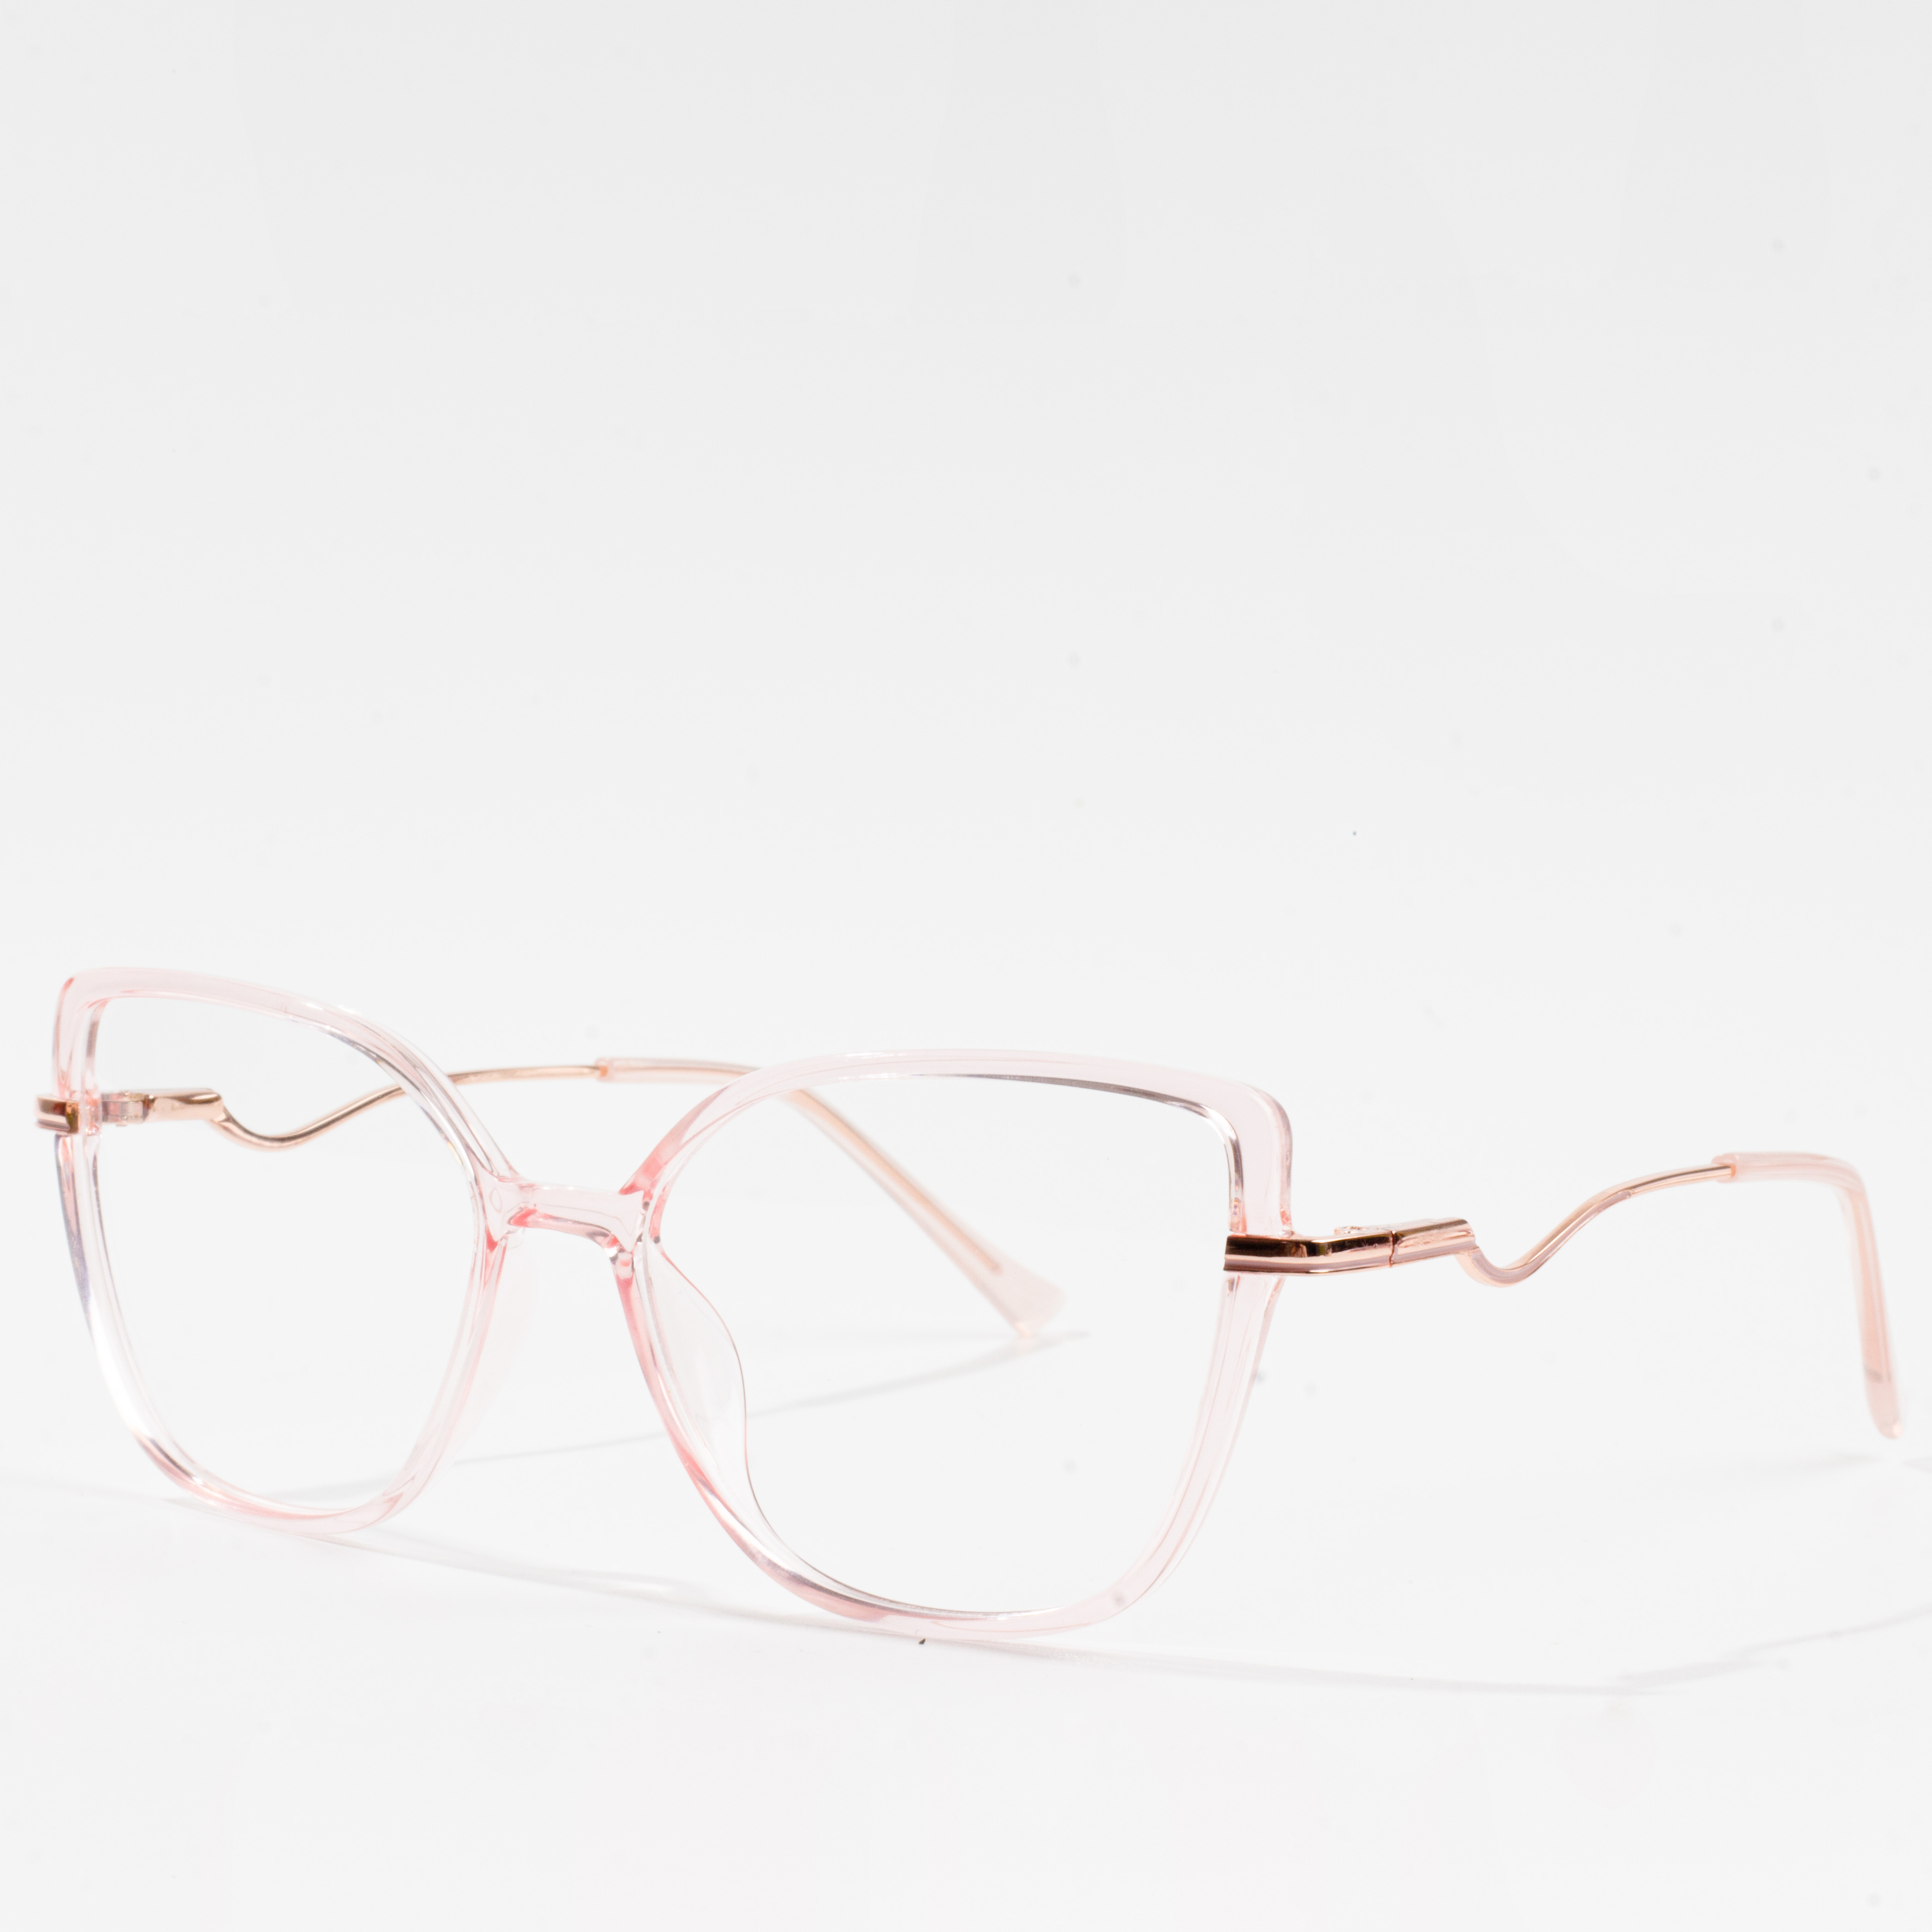 cat frame eyeglasses